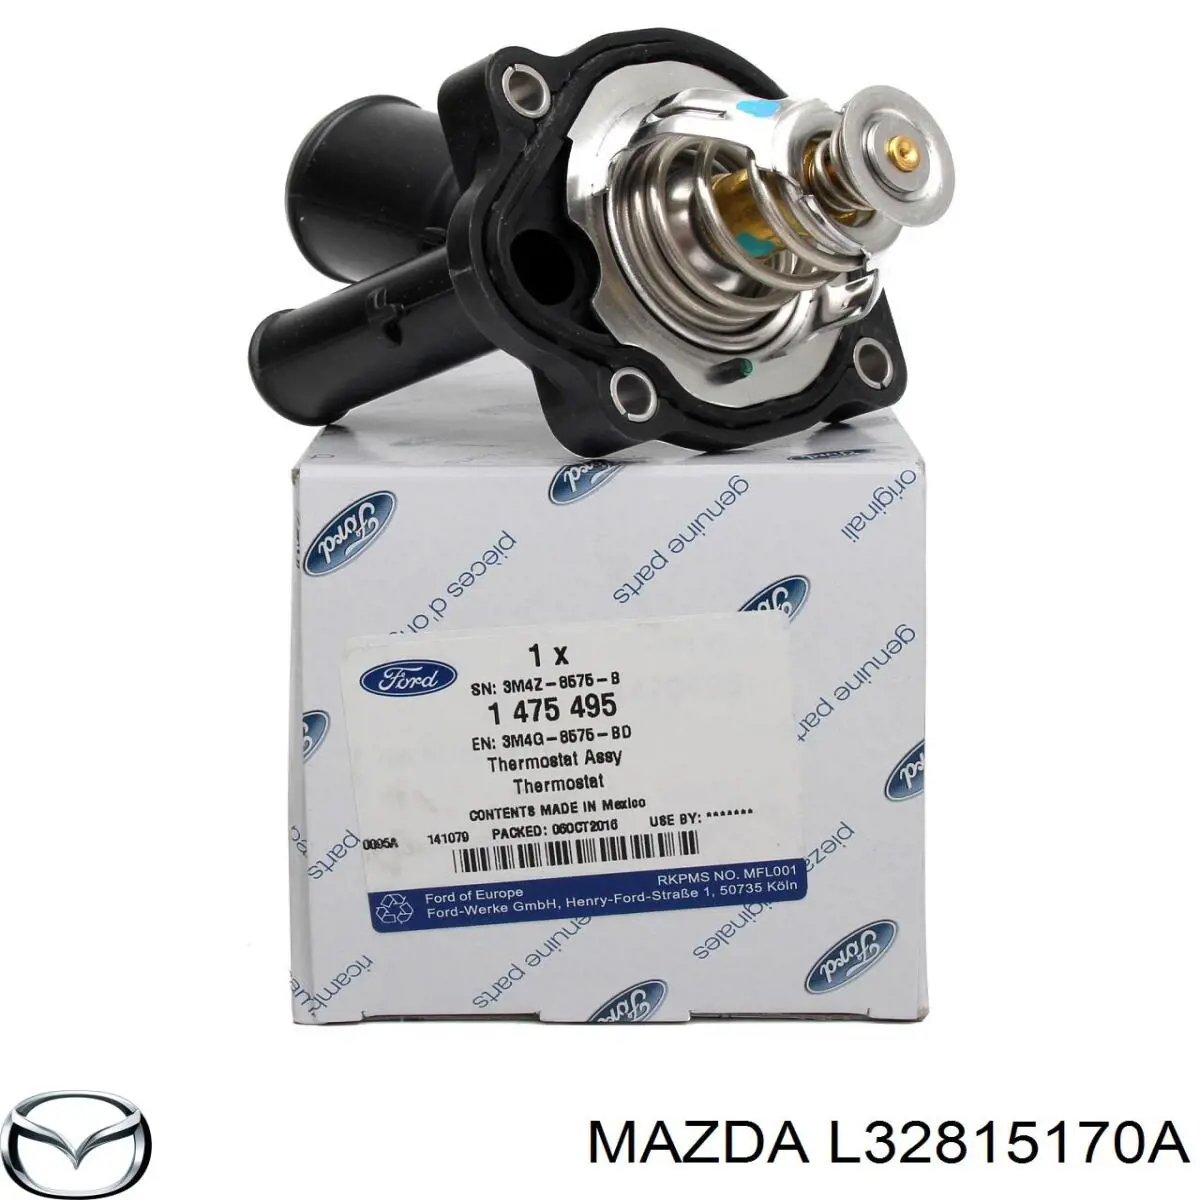 L32815170A Mazda termostato